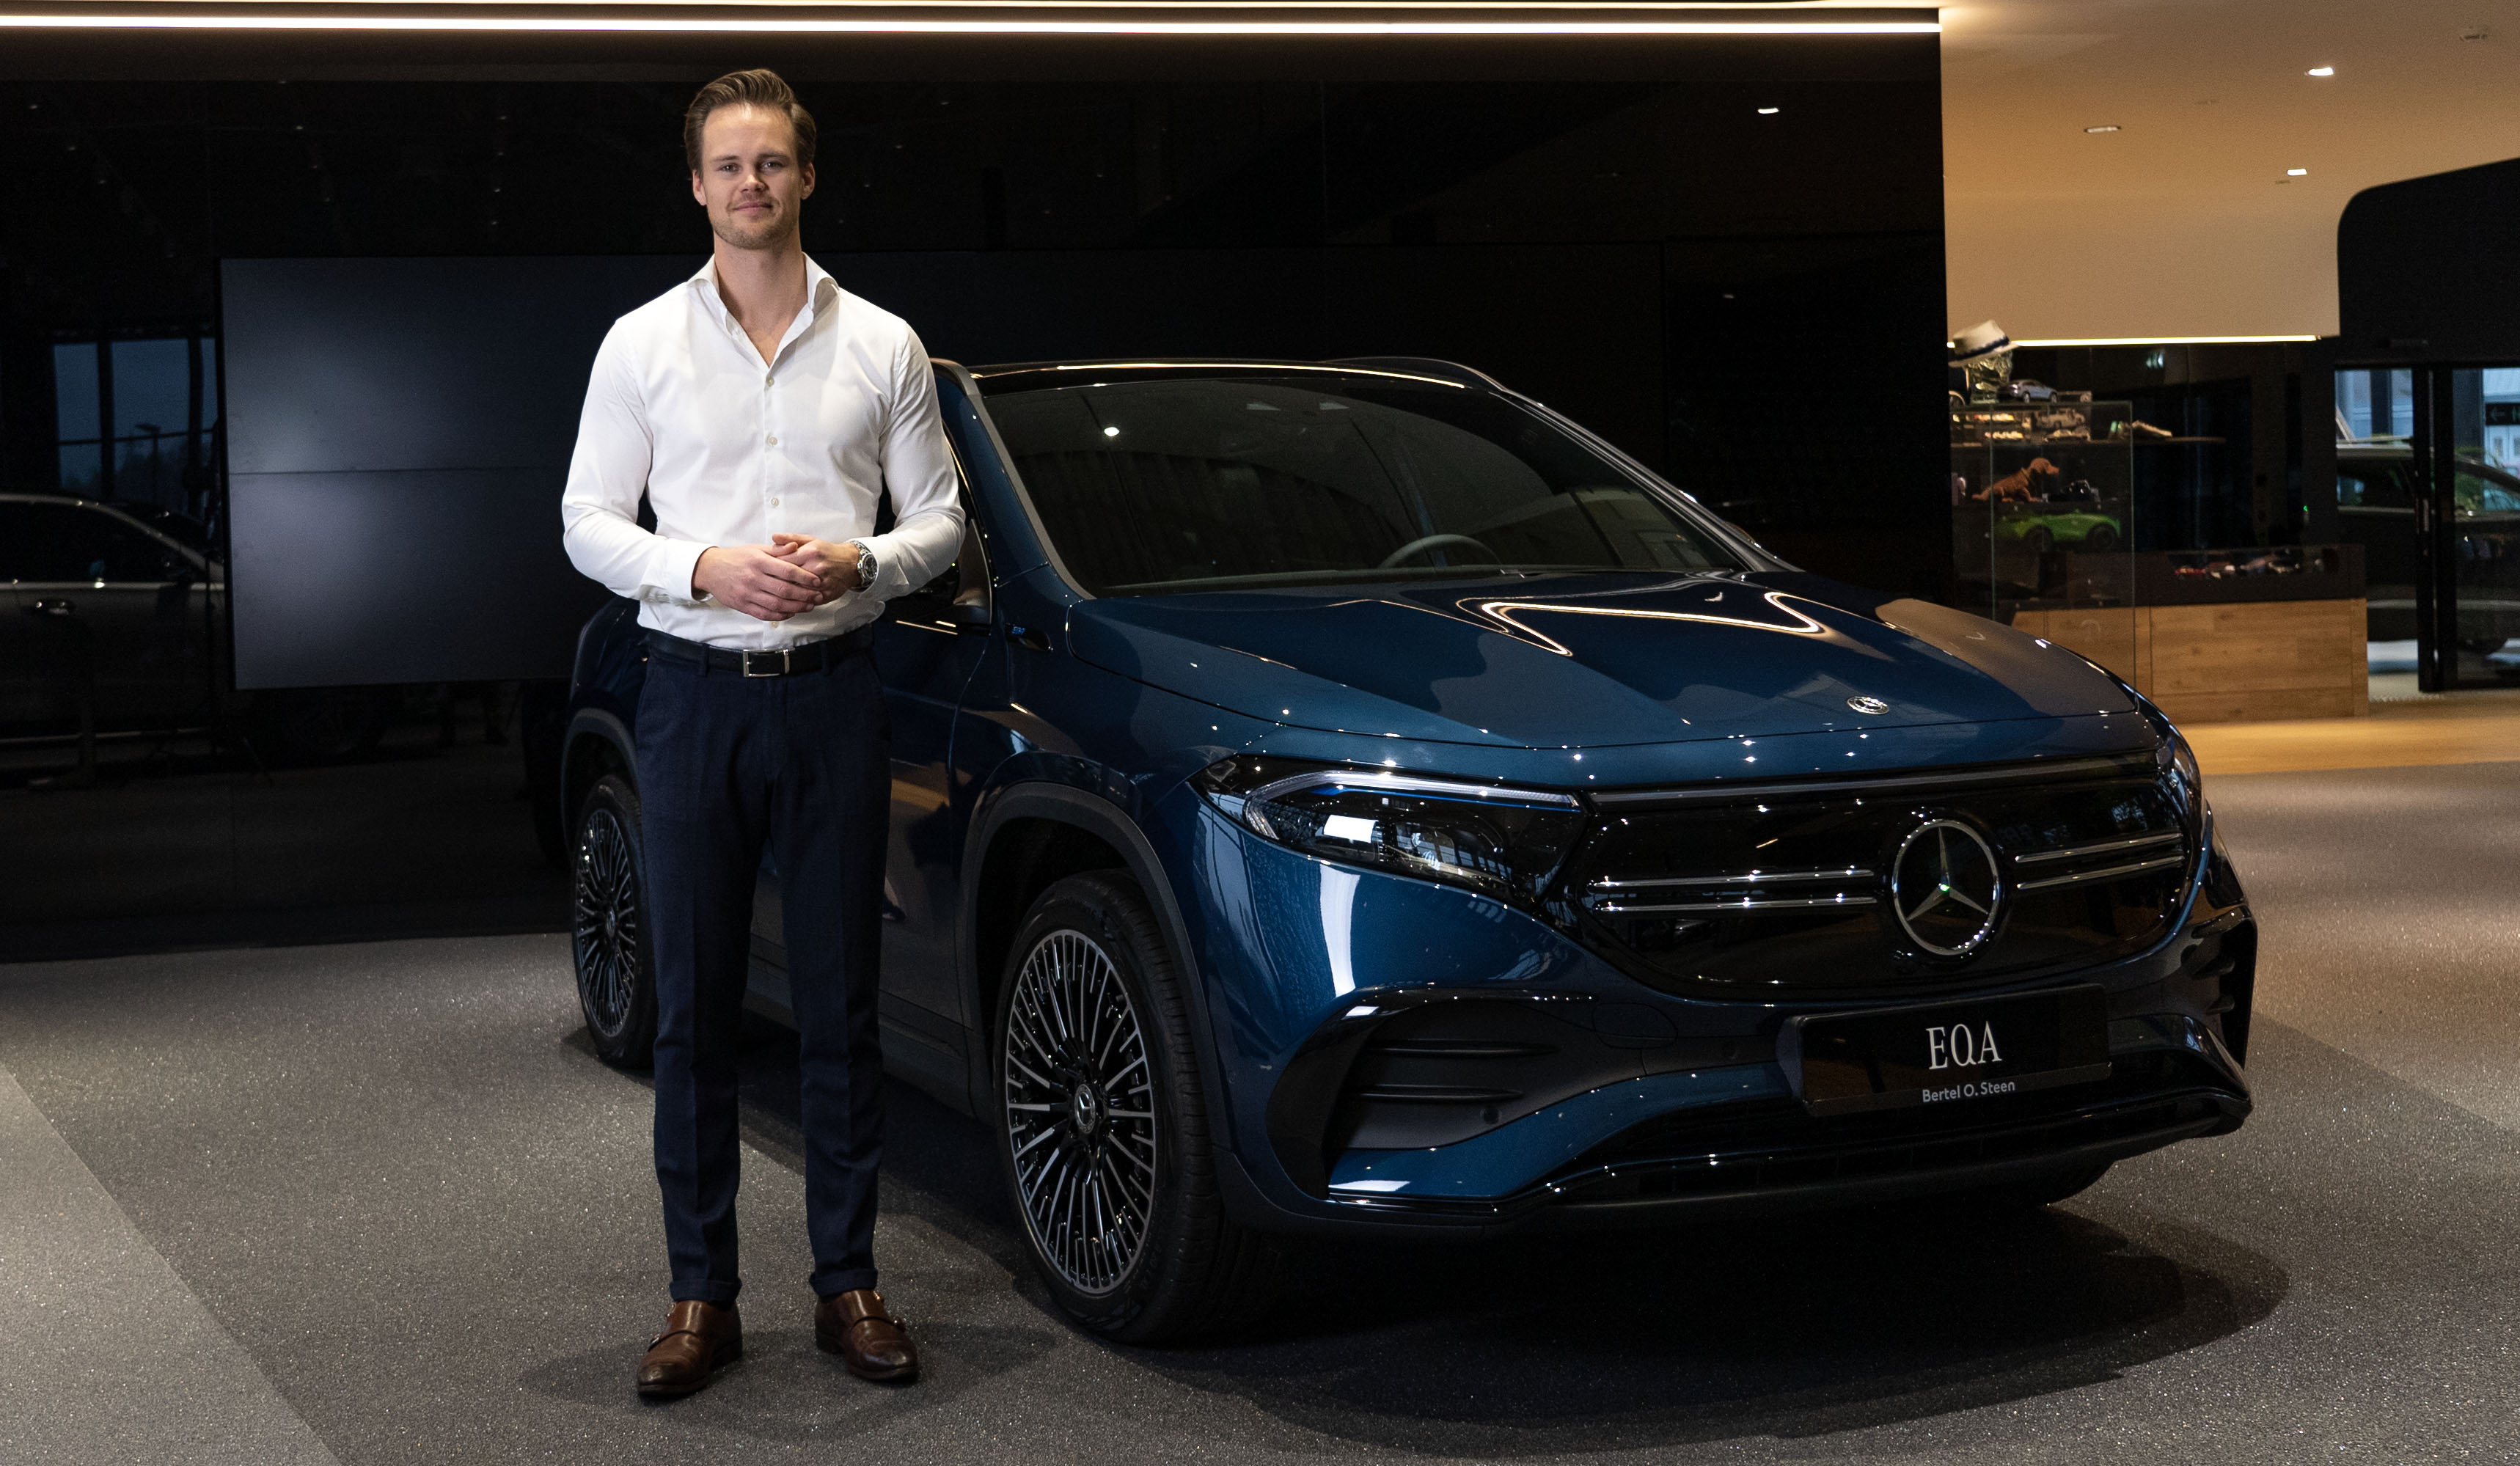 salgskonsulent for Mercedes-Benz hos Bertel O. Steen, Jo Christian Flytør